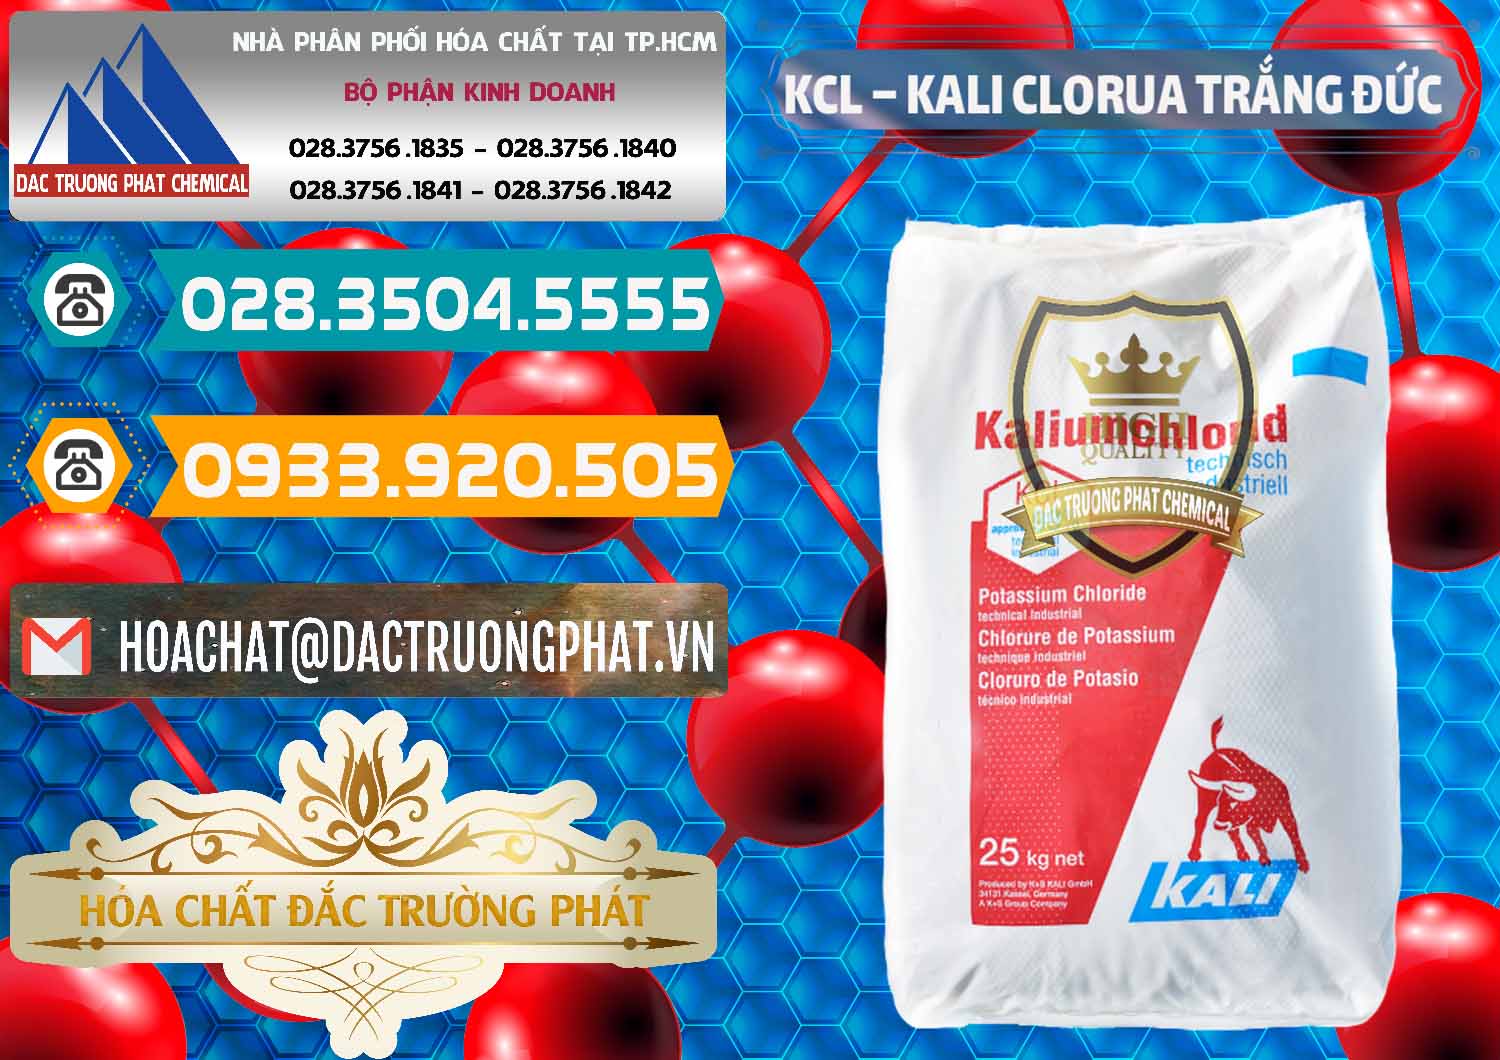 Đơn vị nhập khẩu và bán KCL – Kali Clorua Trắng Đức Germany - 0086 - Chuyên phân phối ( kinh doanh ) hóa chất tại TP.HCM - congtyhoachat.vn